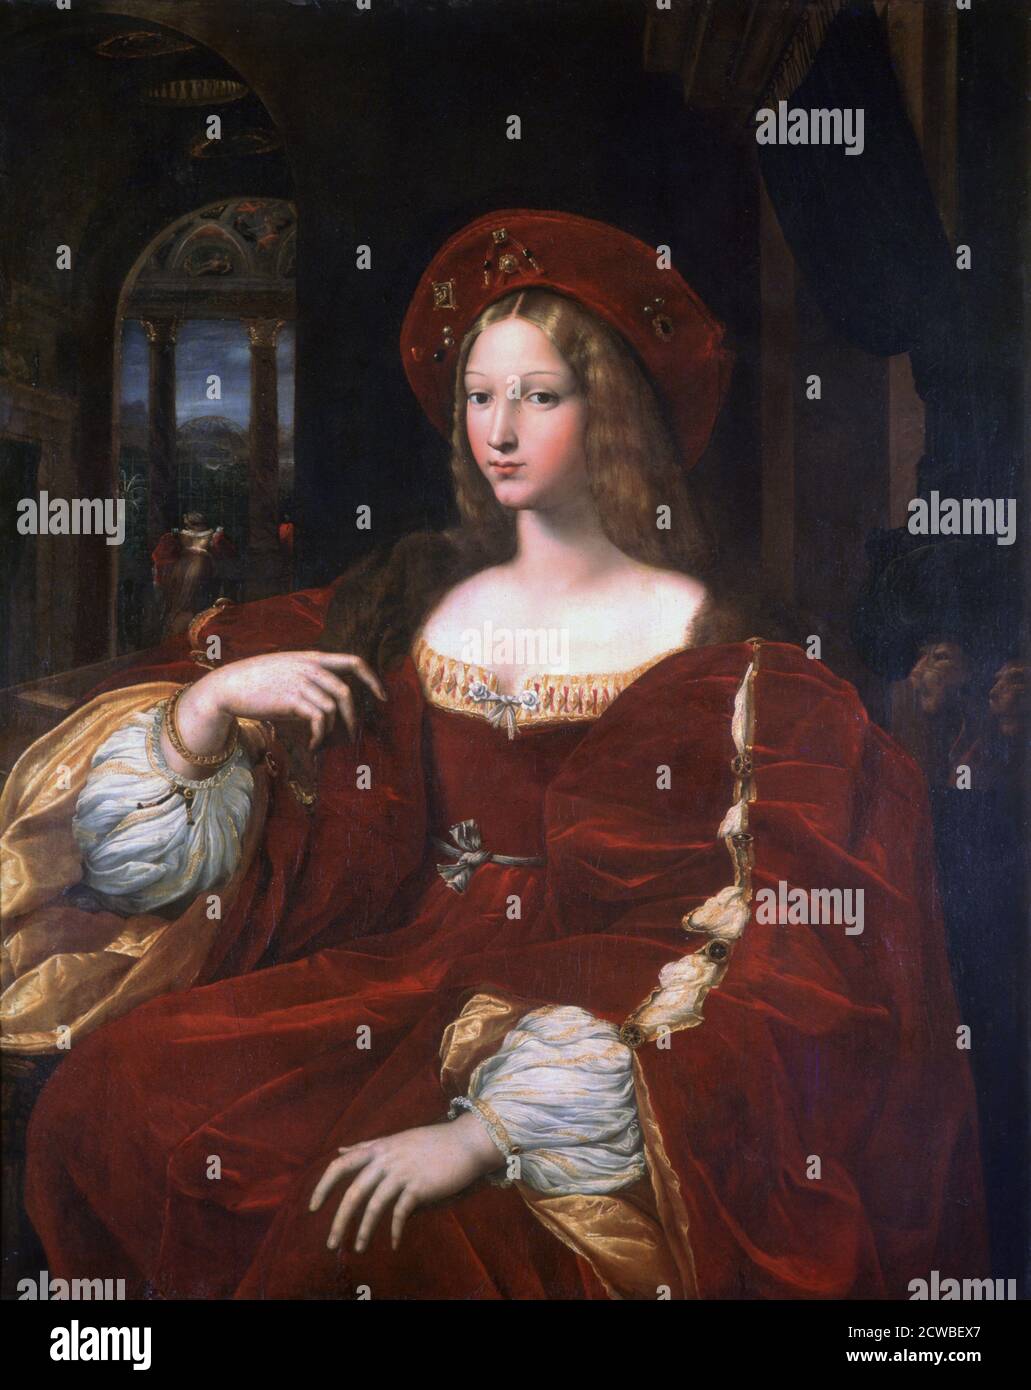 Porträt von Jeanne d'Aragon', 1518. Künstler: Raphael. Raphael (1483-1520) war ein italienischer Maler und Architekt der Hochrenaissance. Seine Arbeit wird für seine Klarheit der Form, Leichtigkeit der Komposition und visuelle Leistung der menschlichen Größe bewundert. Stockfoto